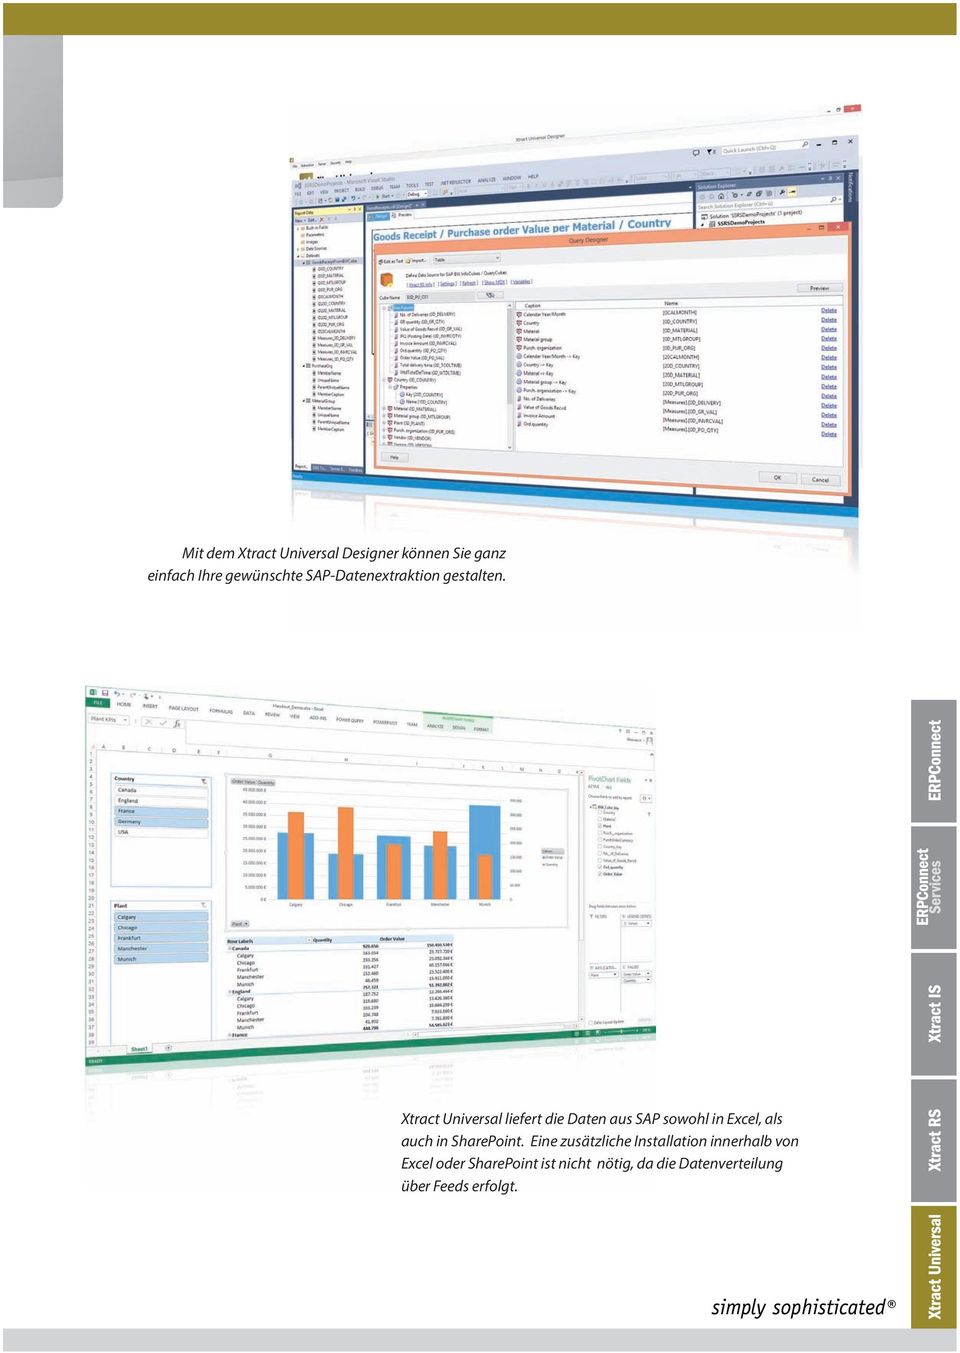 Xtract Universal liefert die Daten aus SAP sowohl in Excel, als auch in